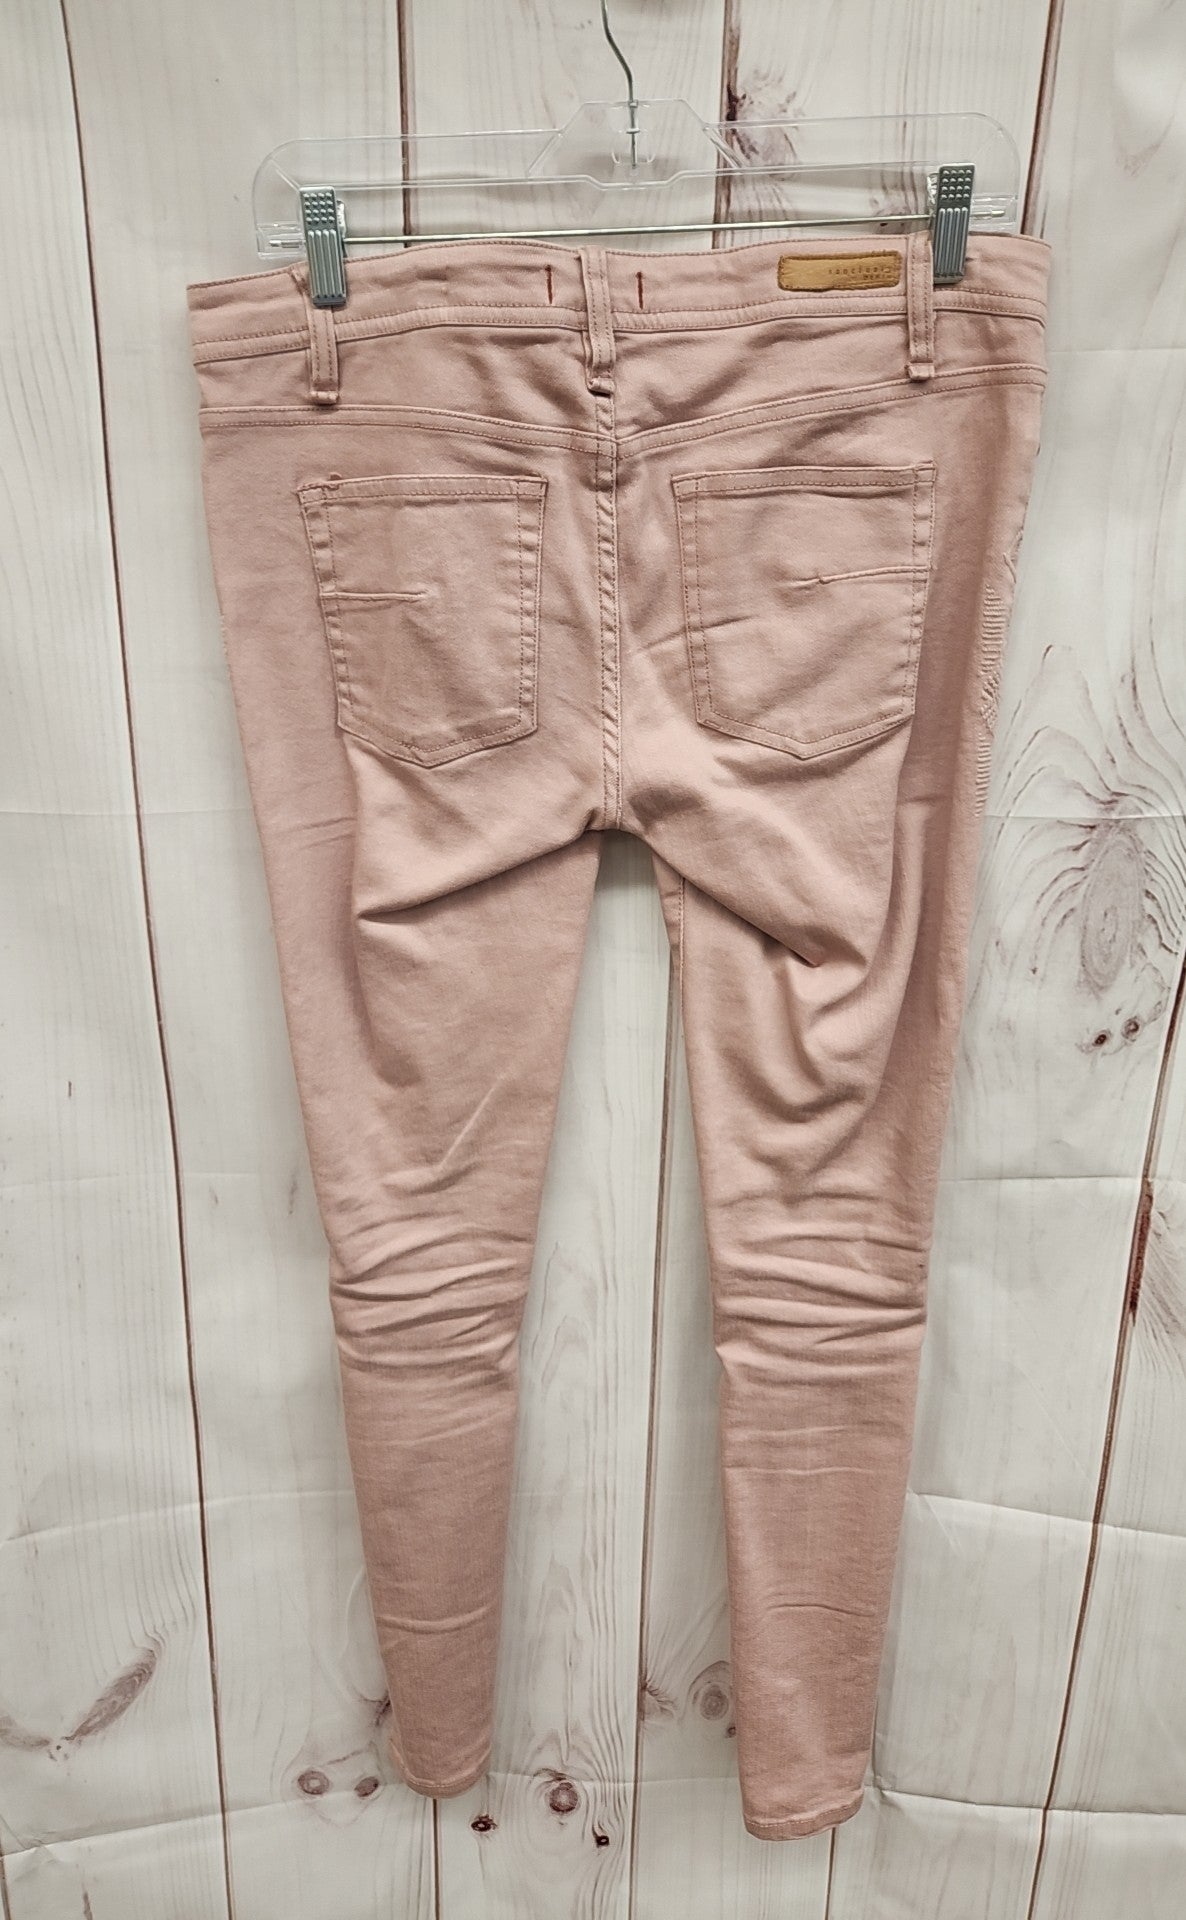 Sanctuary Women's Size 29 (7-8) Pink Jeans